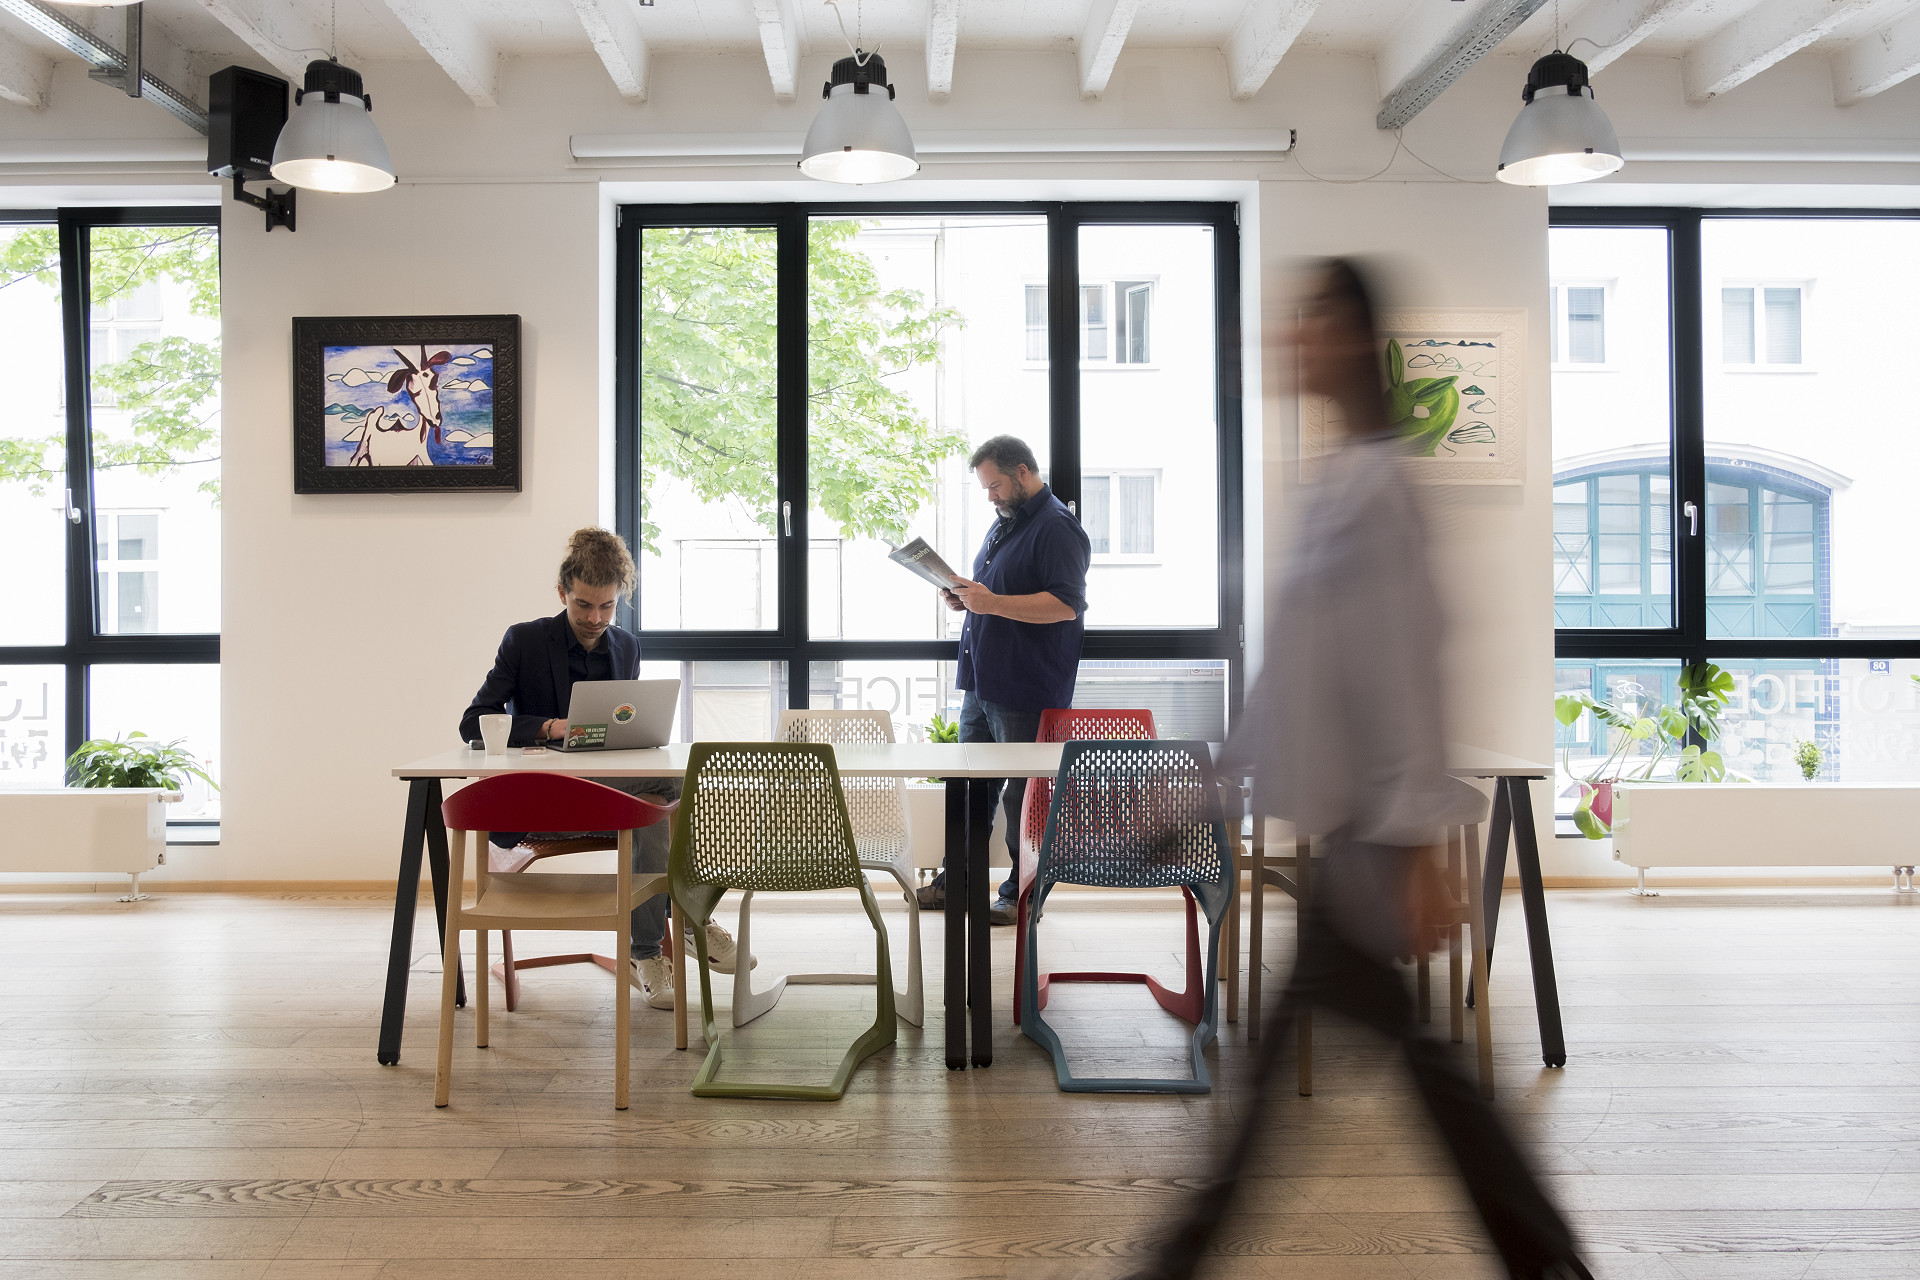 Finde deinen Coworking & Shared Office Space in Wien! Wir bieten flexible Bürolösungen mit individuell gestaltbaren Paketen.  LOFFICE - dein cooles Gemeinschaftsbüro in Wien.